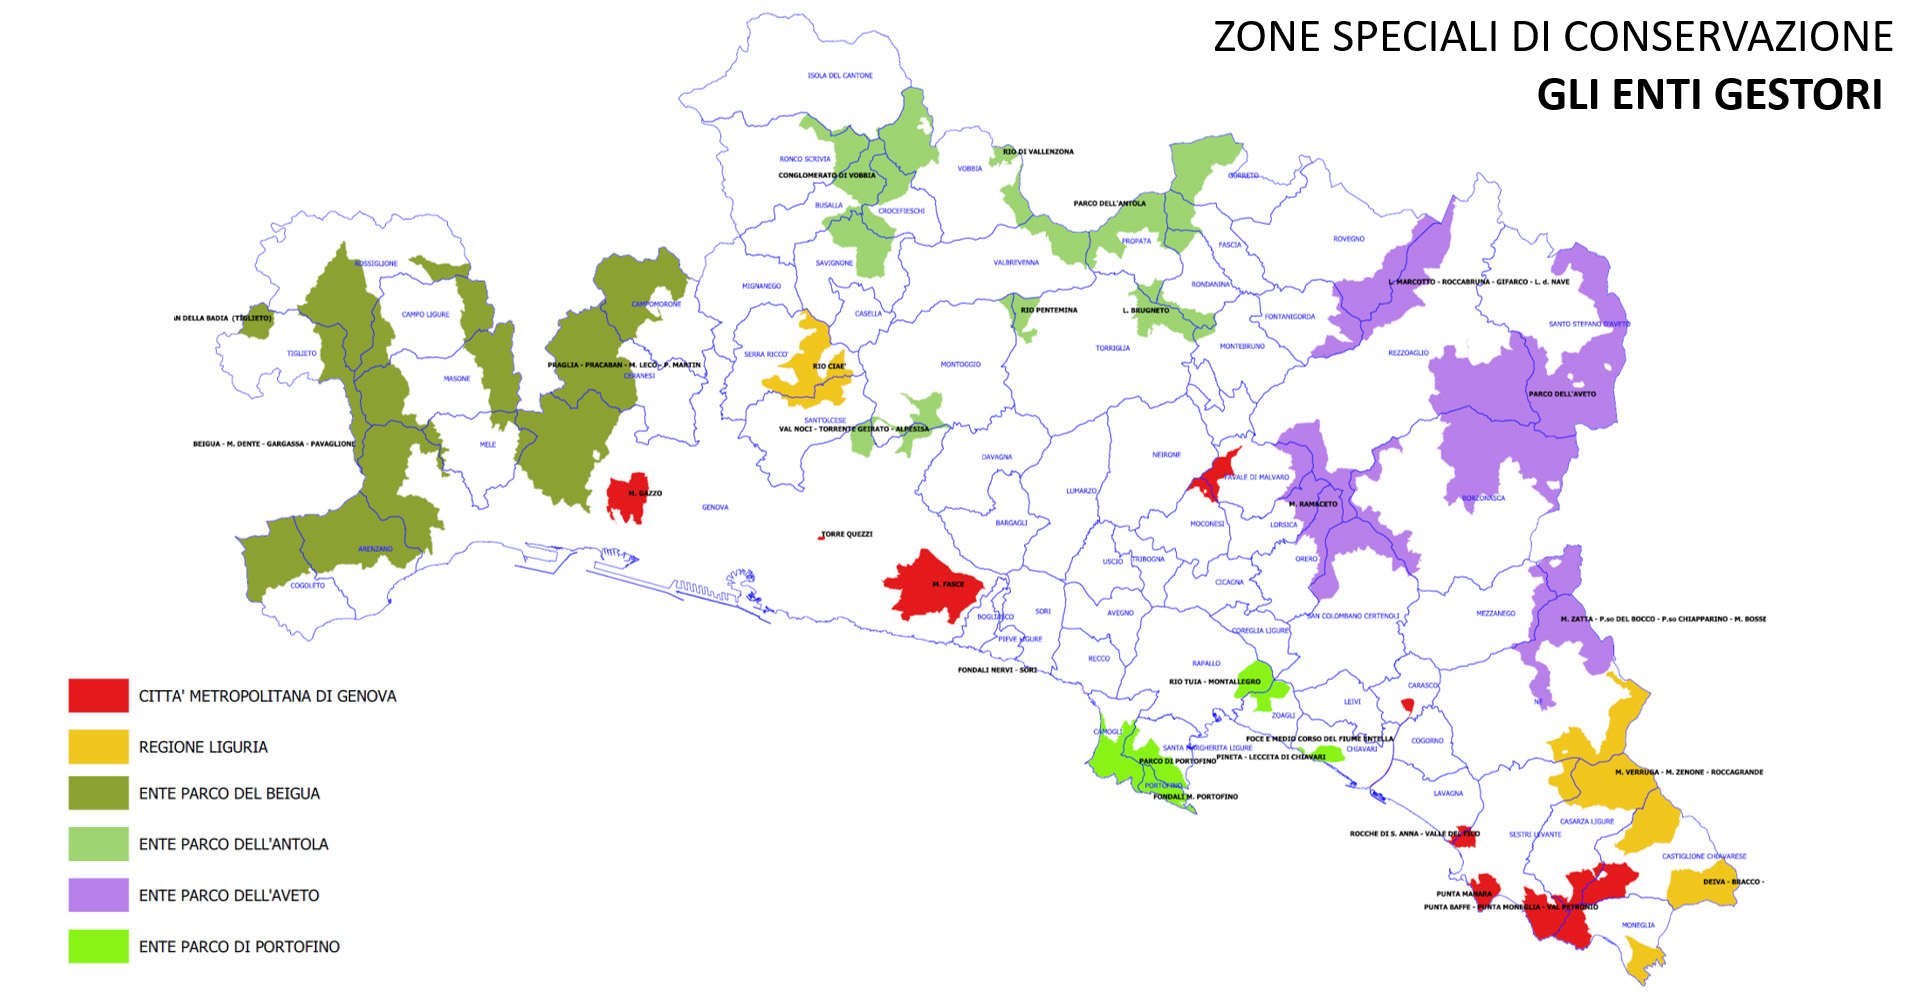 Zone Speciali di Conservazione (ZSC)